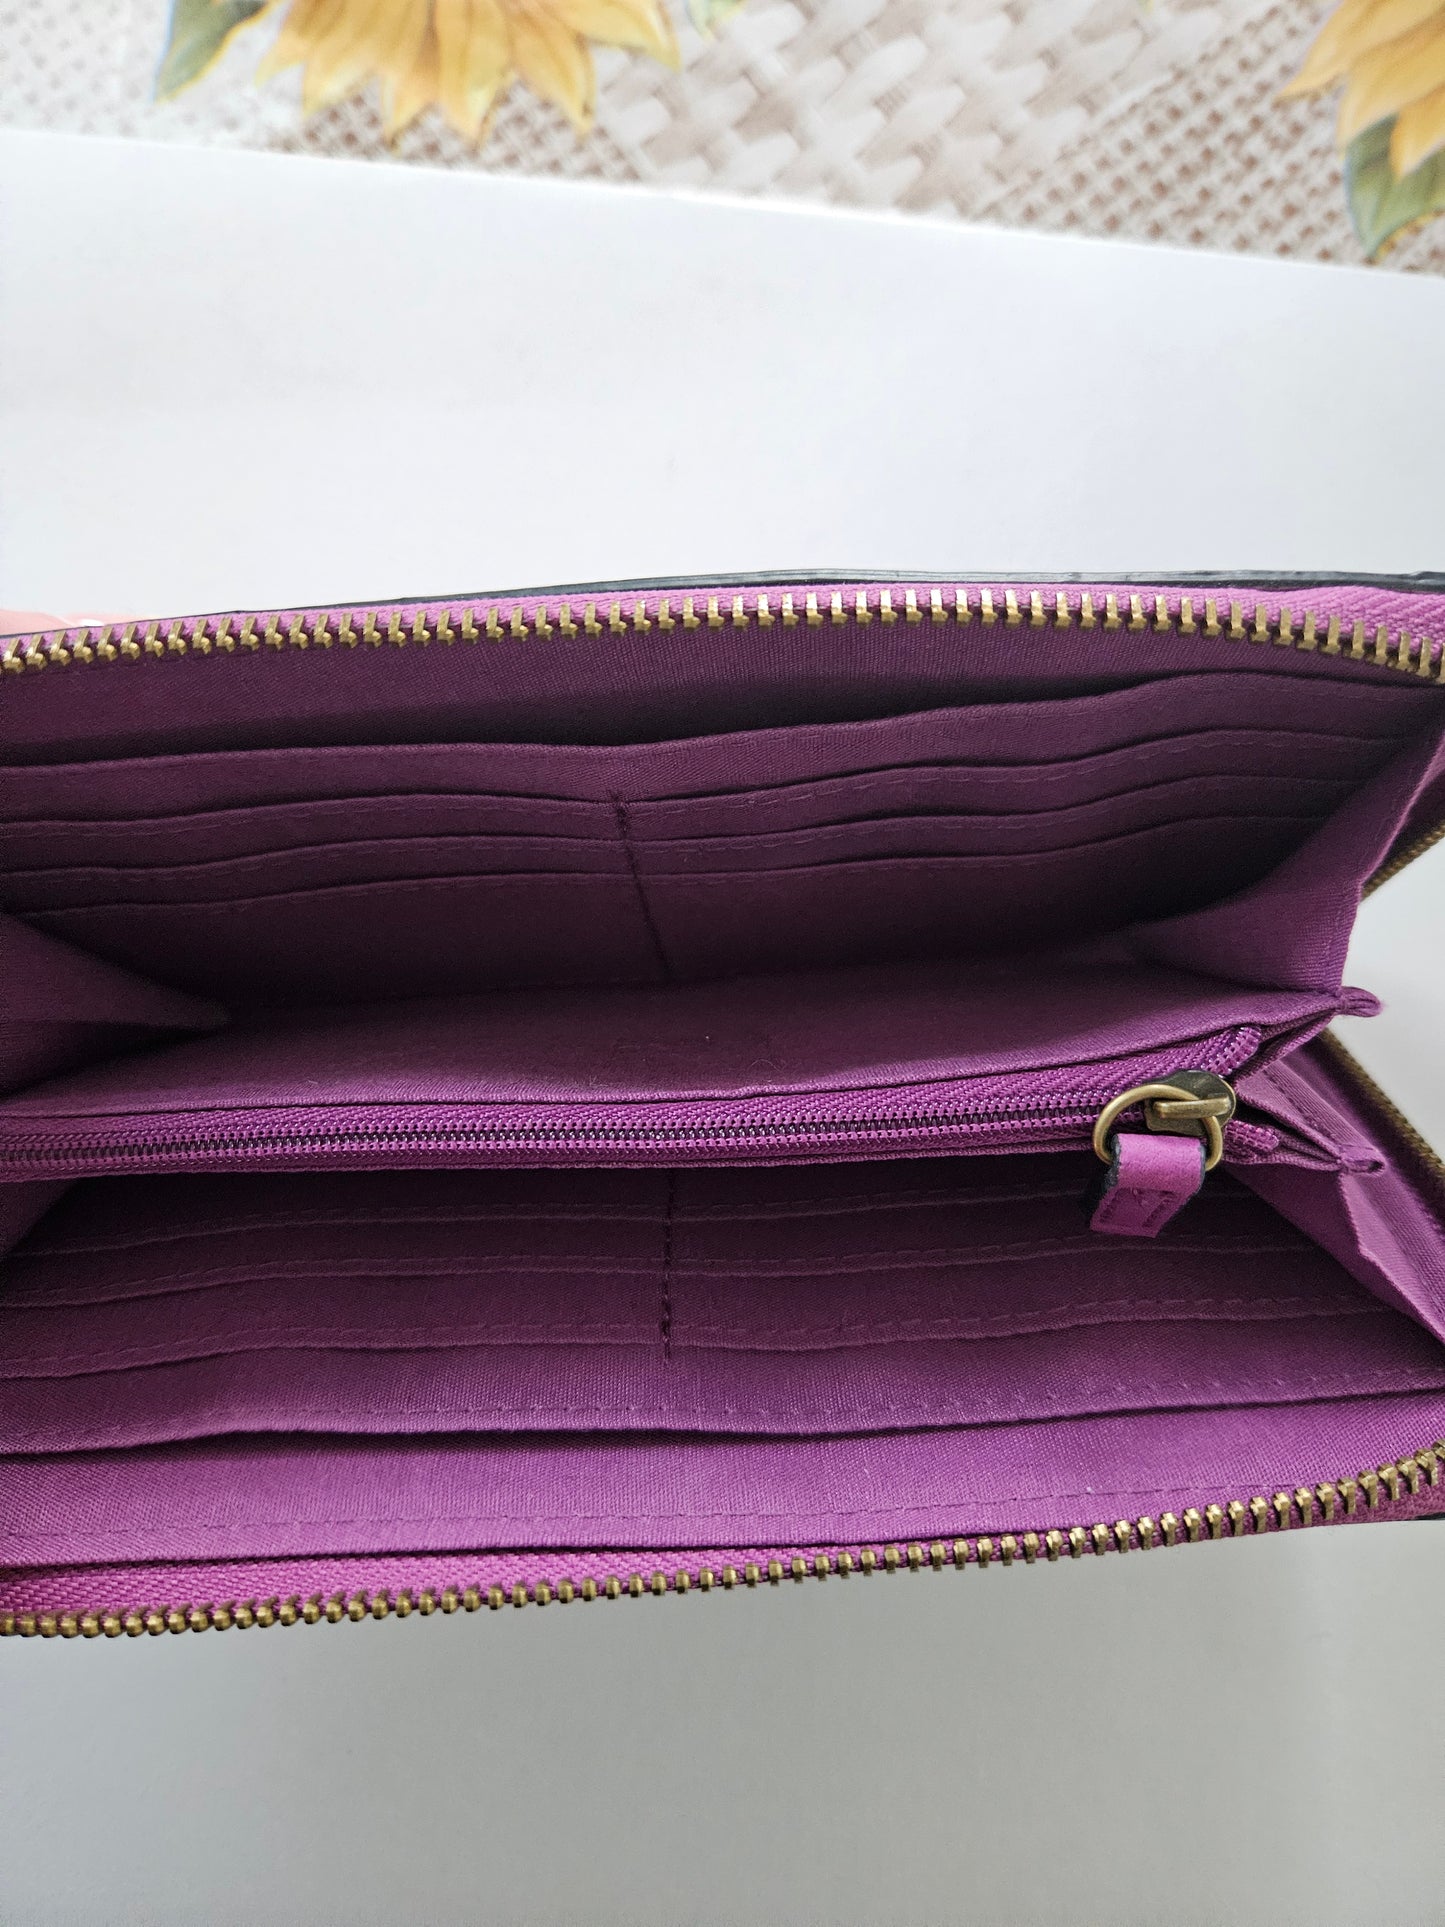 Pretty purple wallet